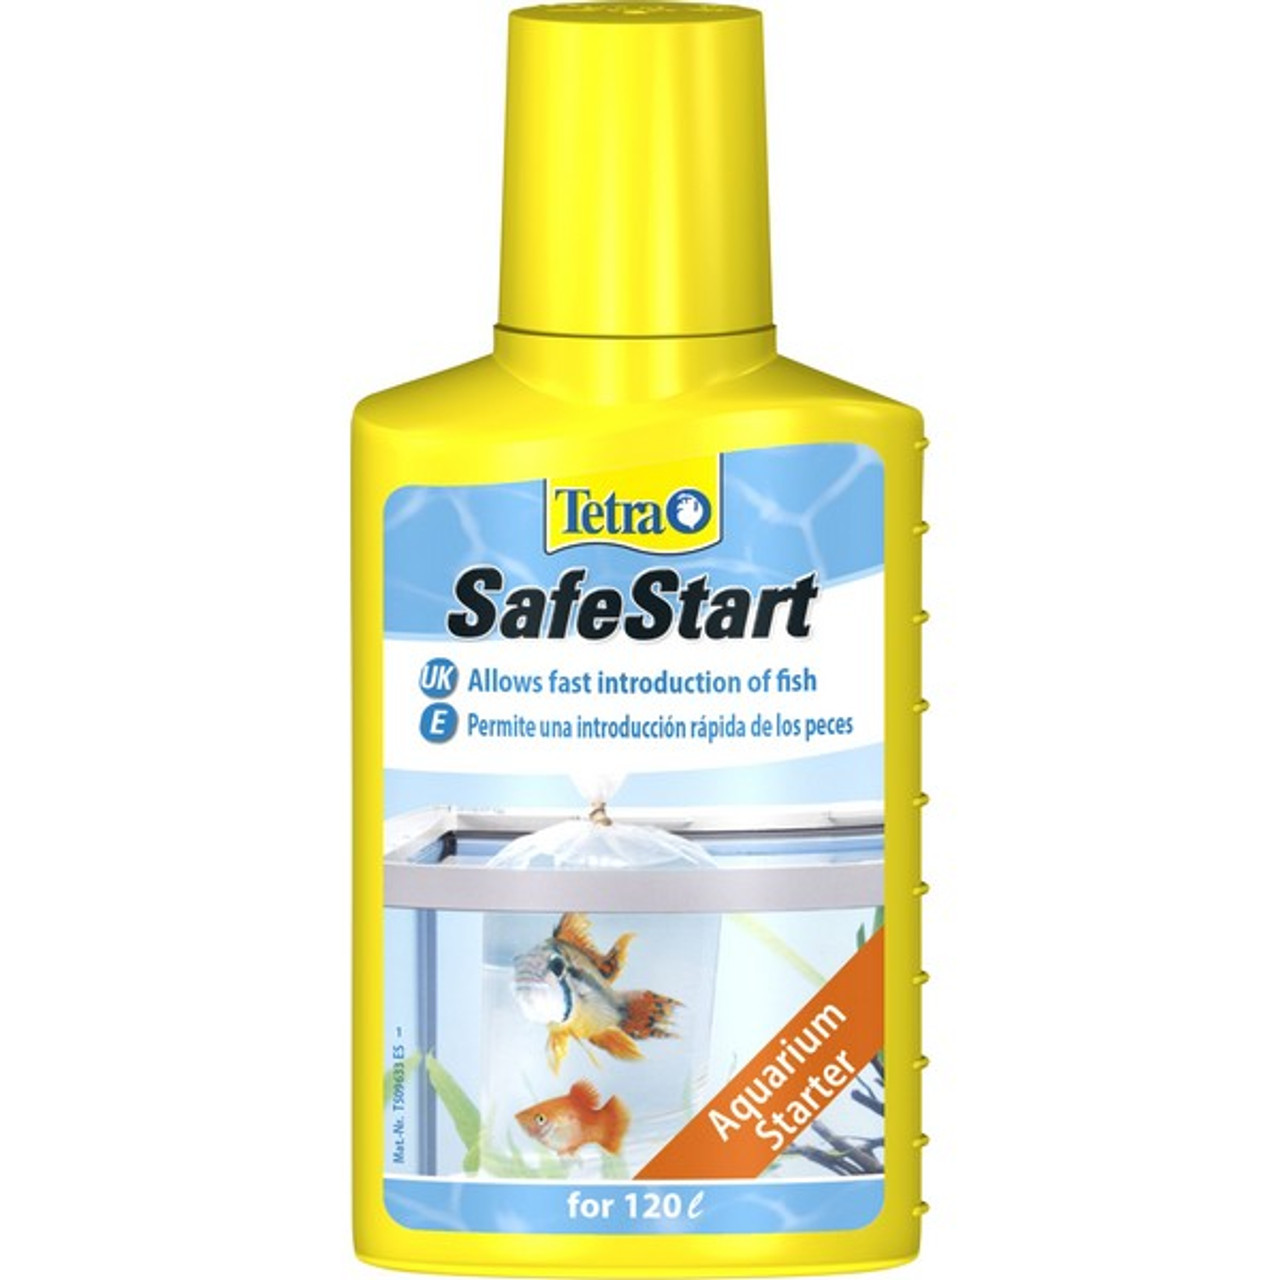 Tetra® AquaSafe and SafeStart  Food animals, Tetra fish, Small pets